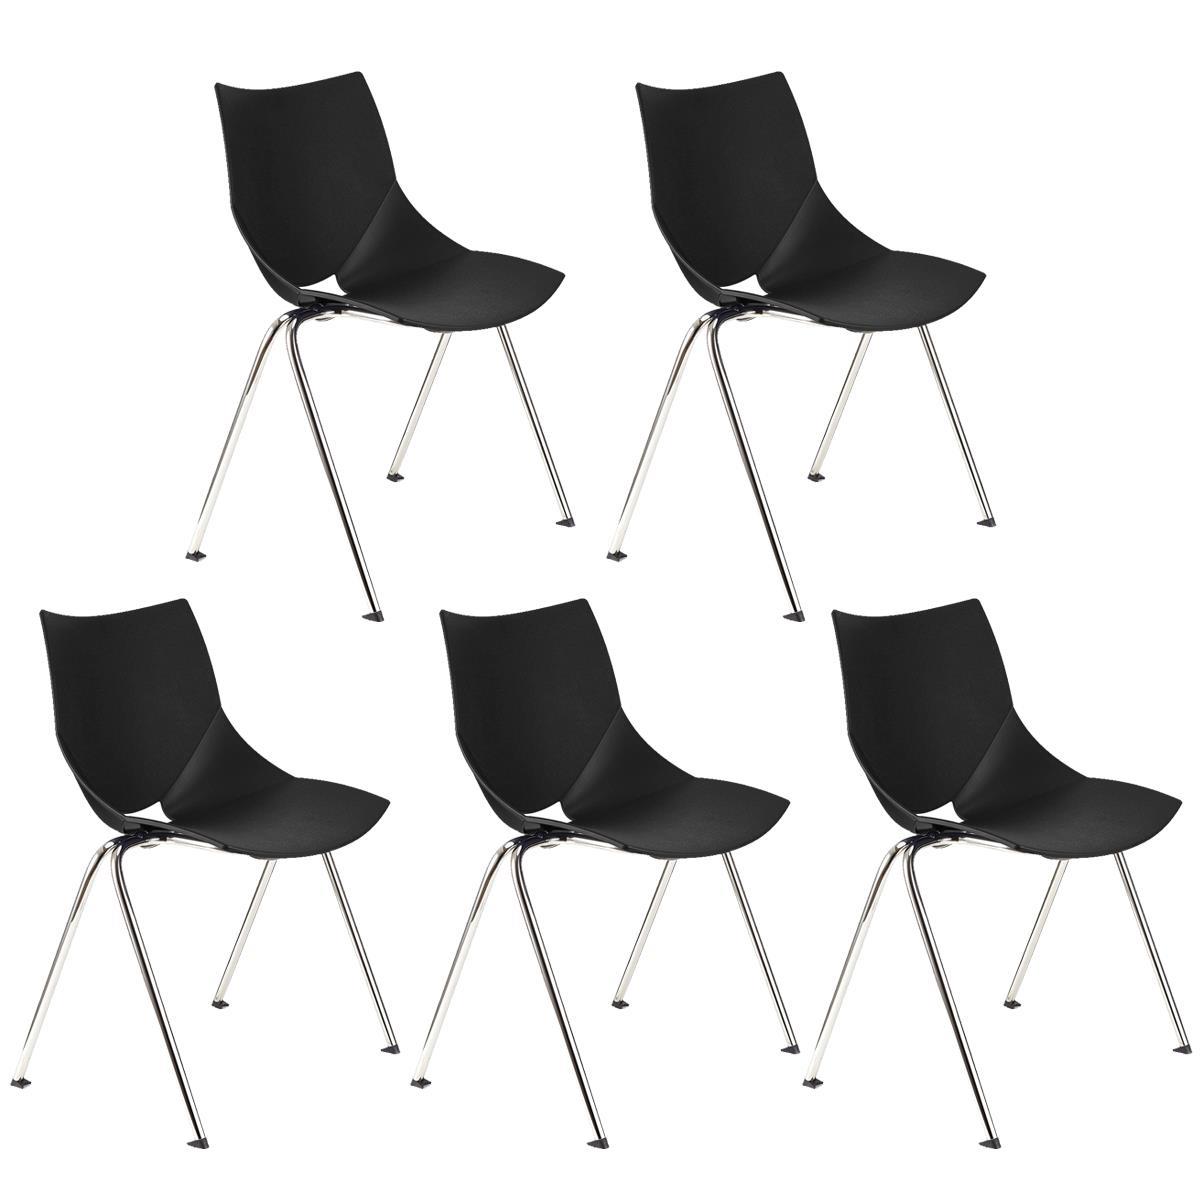 Lote 5 Cadeiras de Visita AMIR, Confortável e Prática, Empilhável, Cor Preto